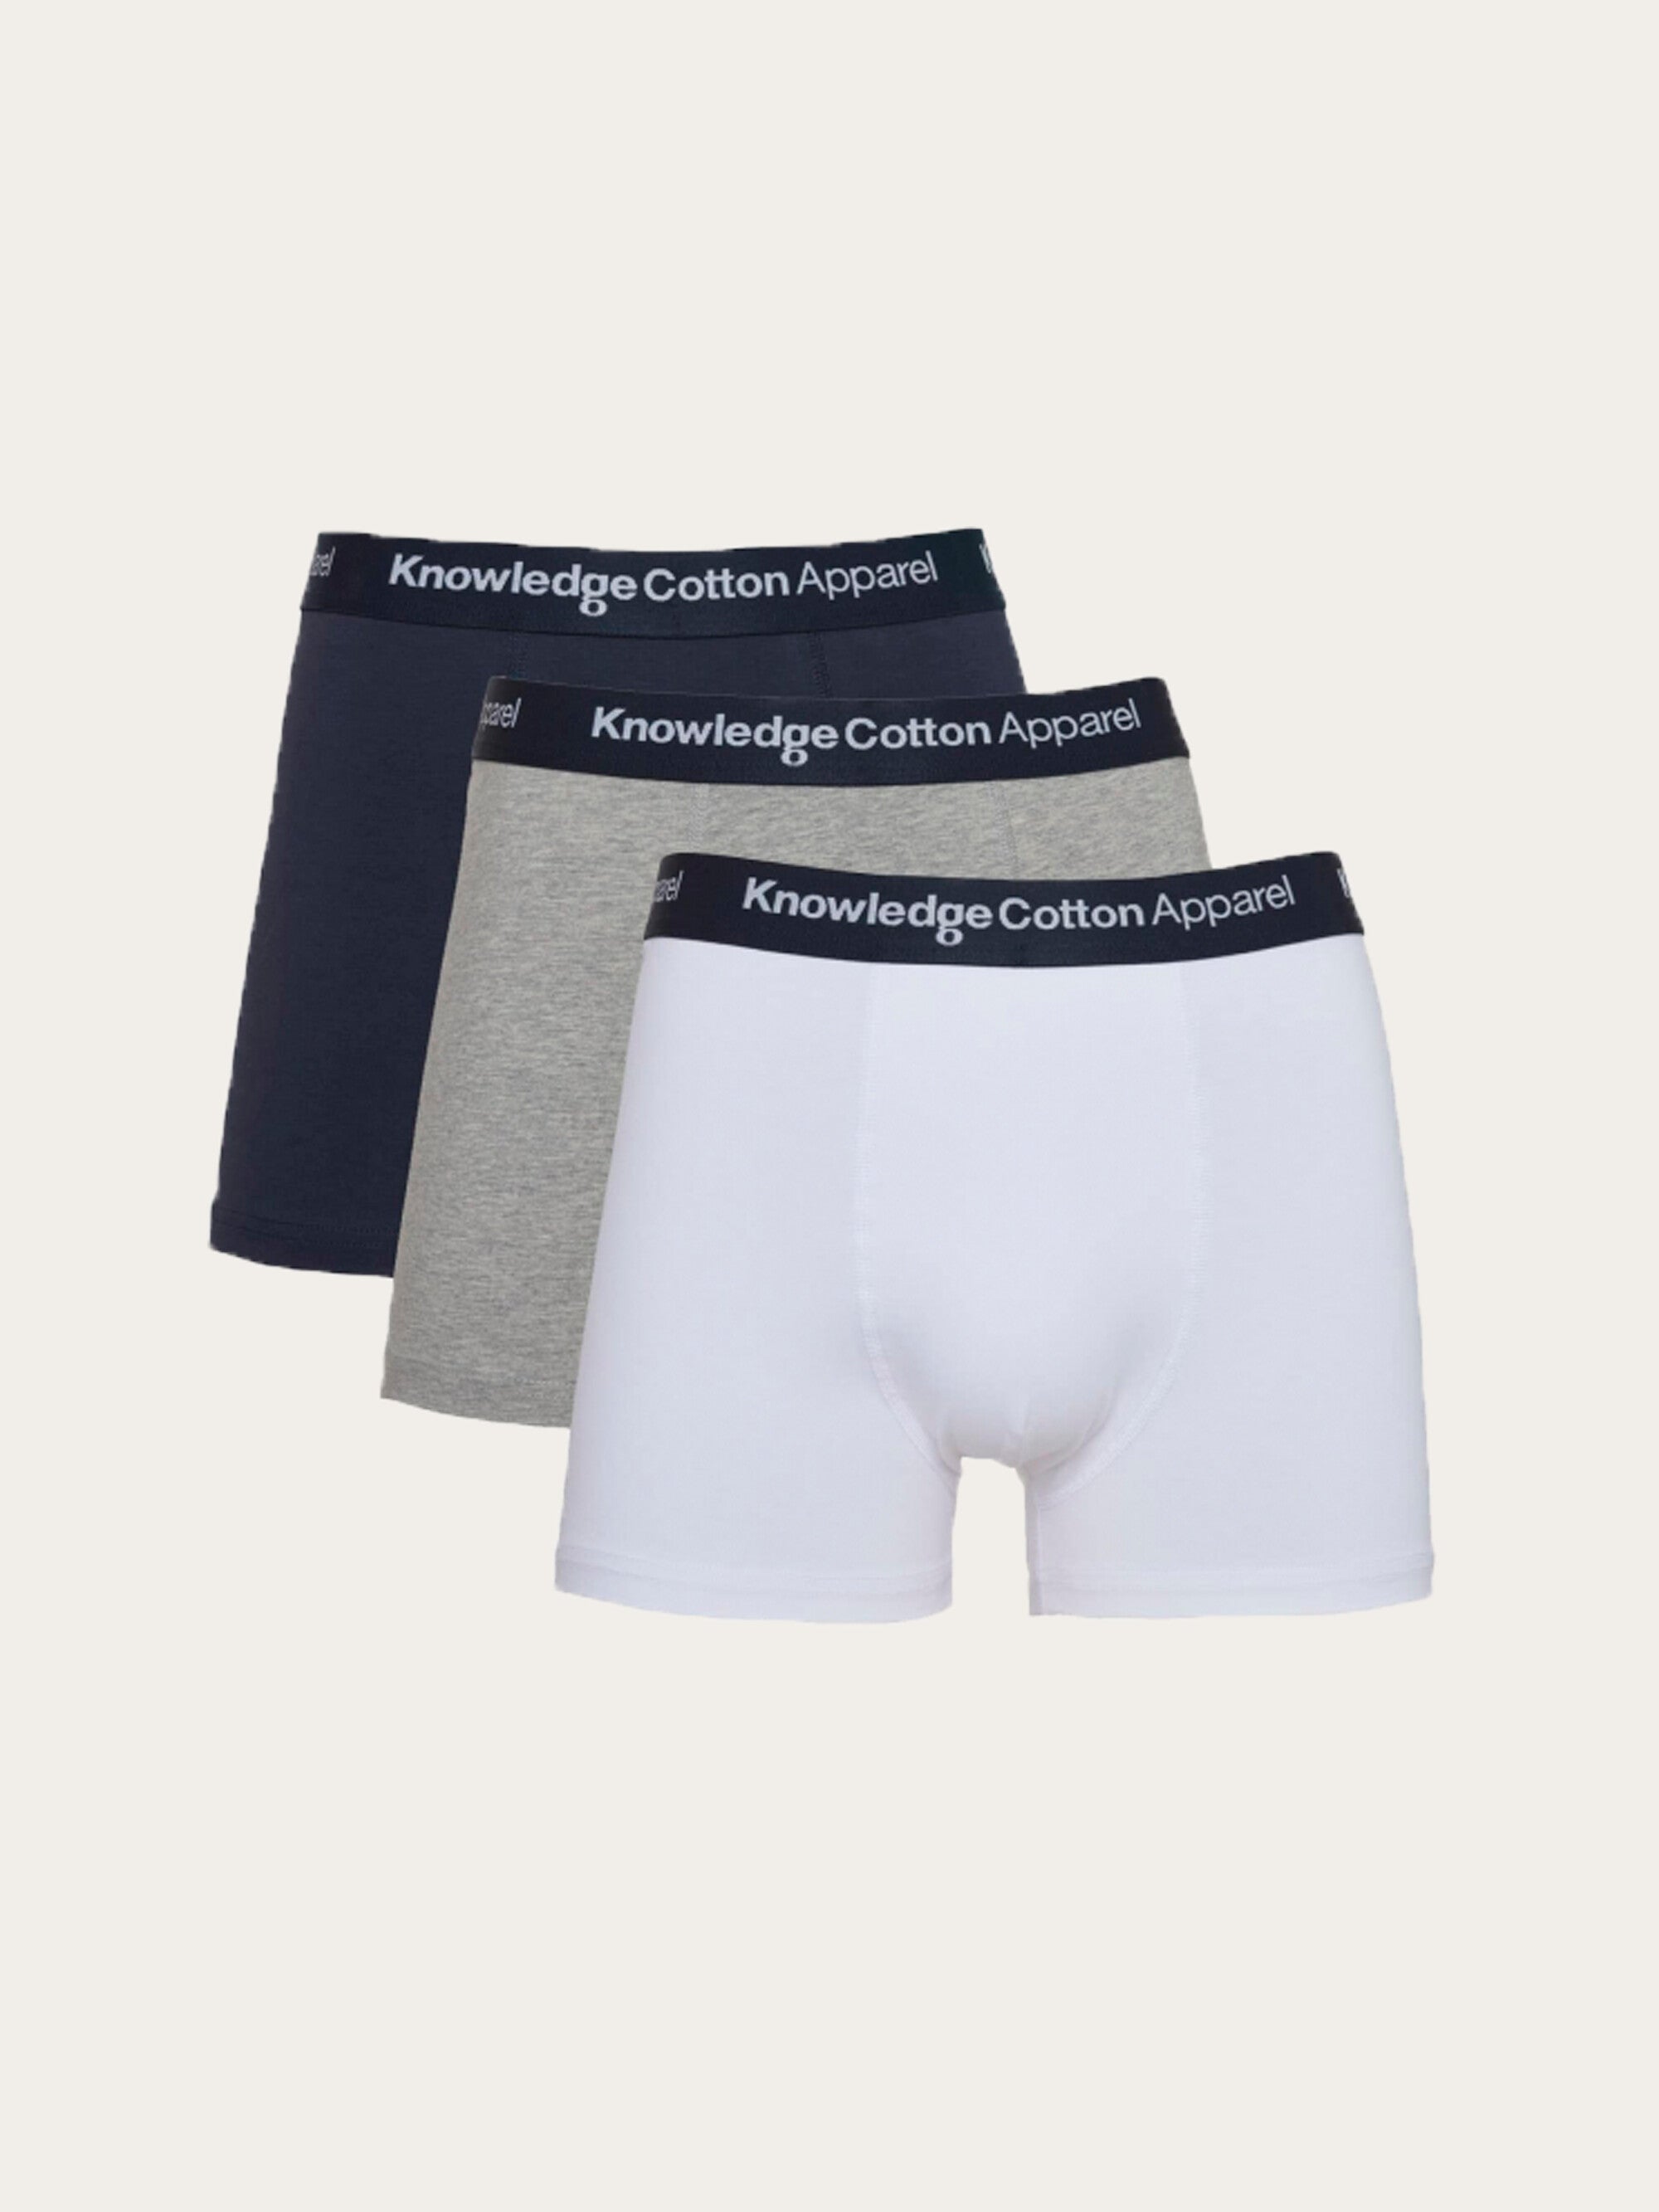 Boy-short cotton grey melange - WOMEN's Panties